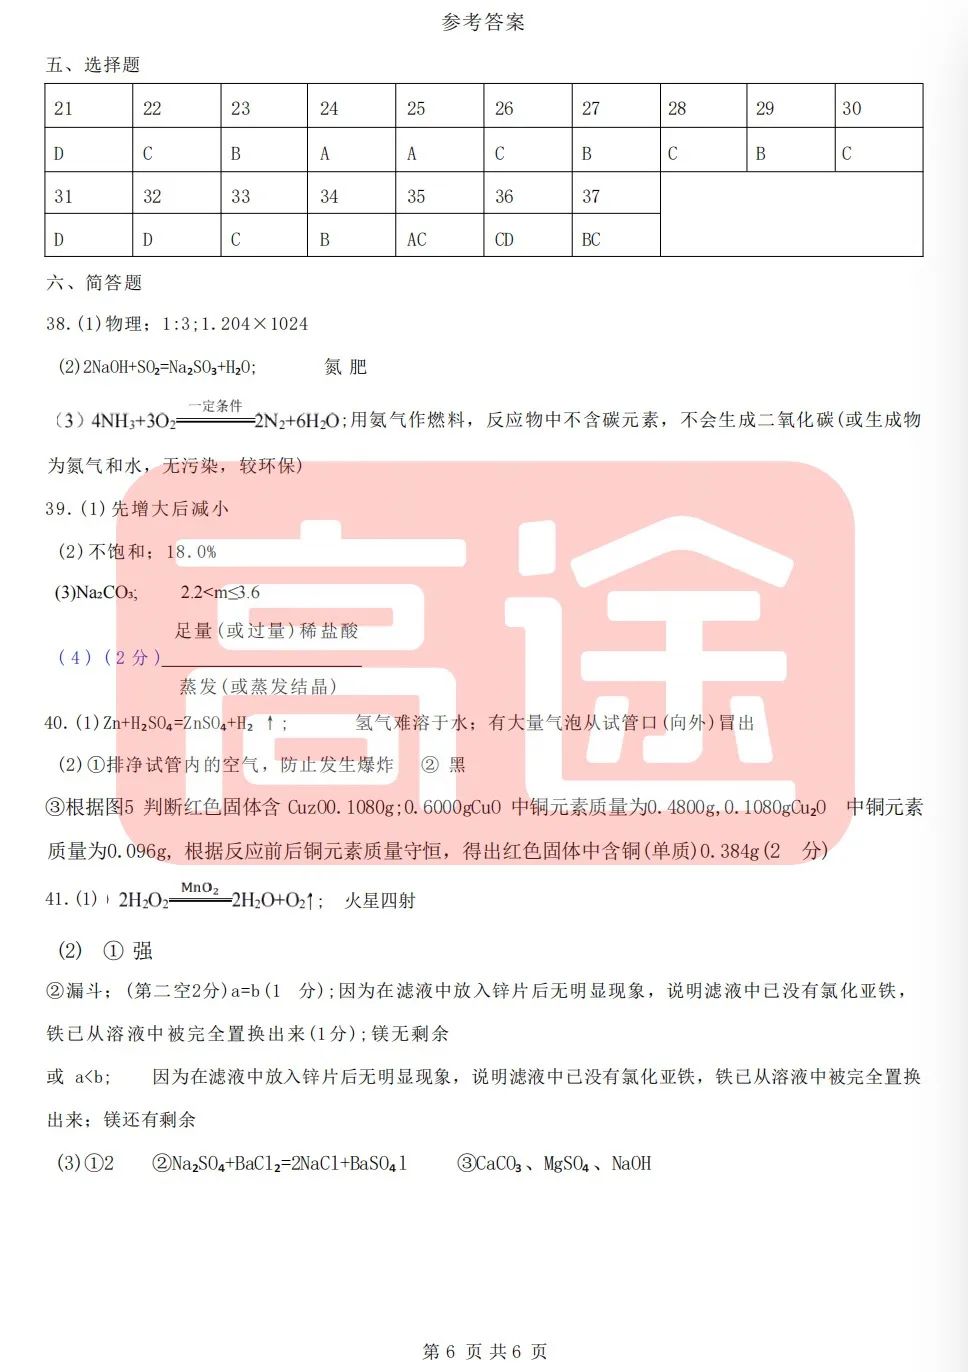 上海16区中考二模真题试卷大合集!定位排名实时更新! 第46张